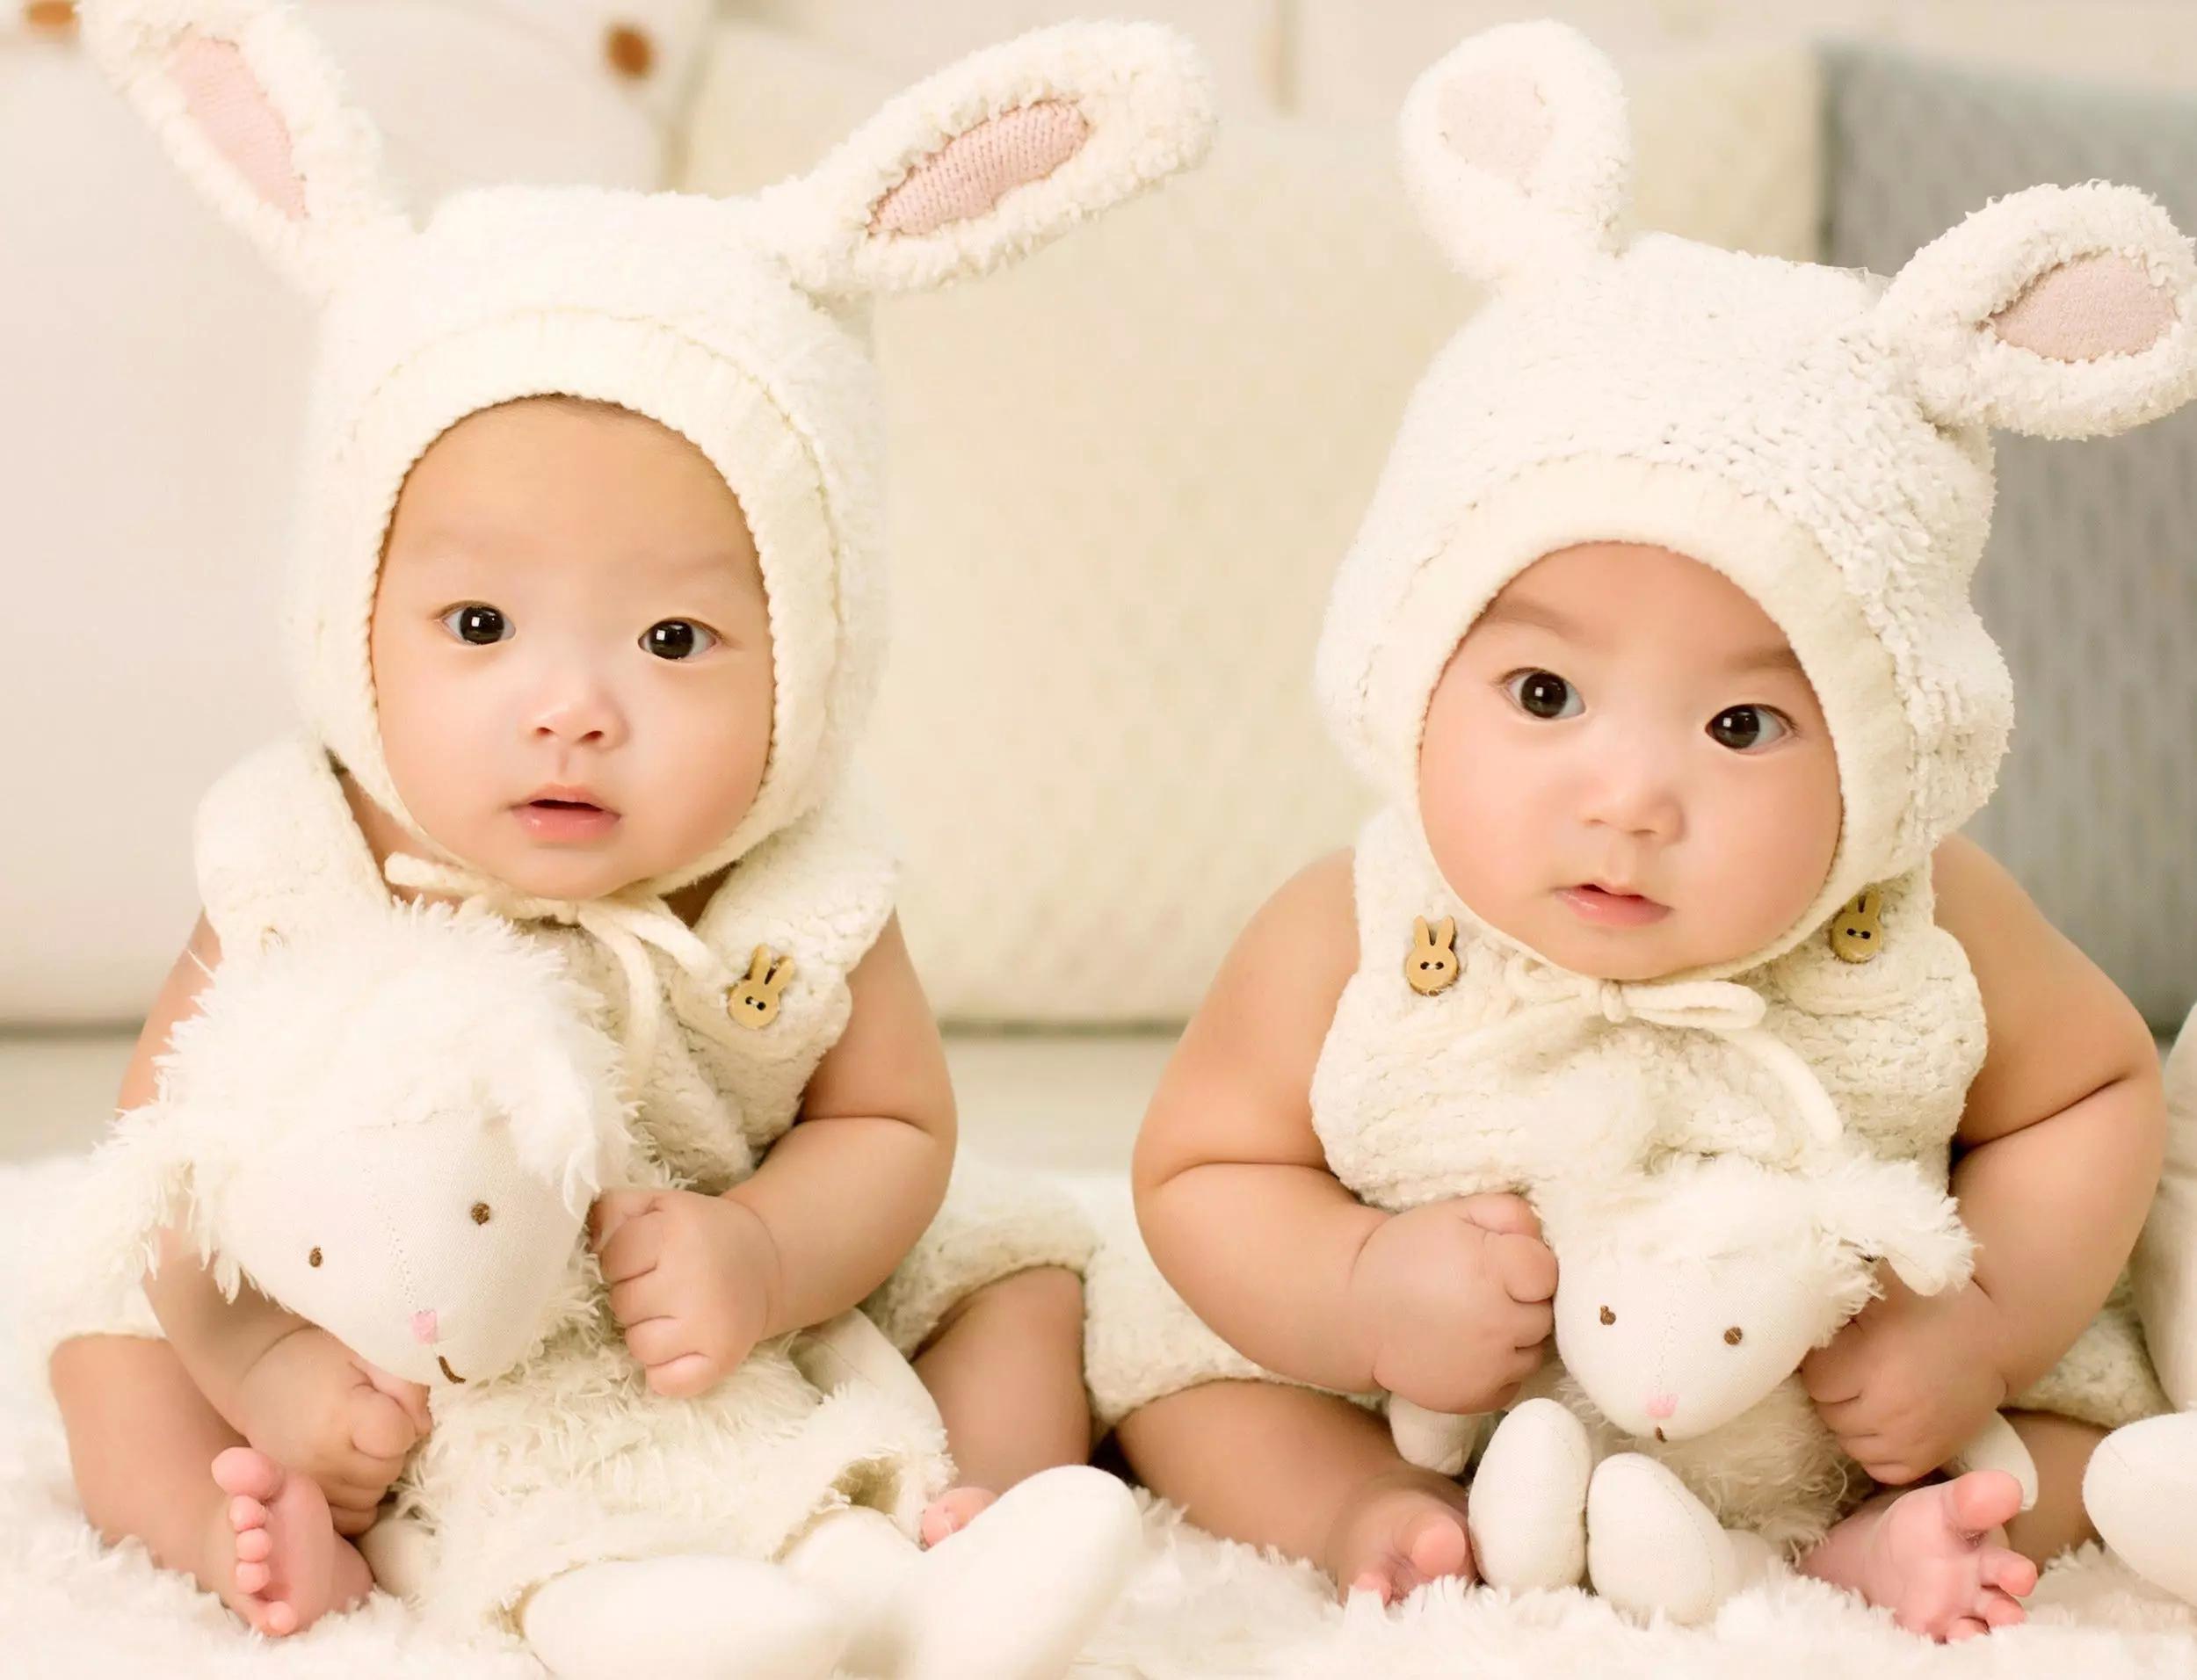 双胞胎宝宝图片大全图片展示_双胞胎宝宝图片大全相关图片下载